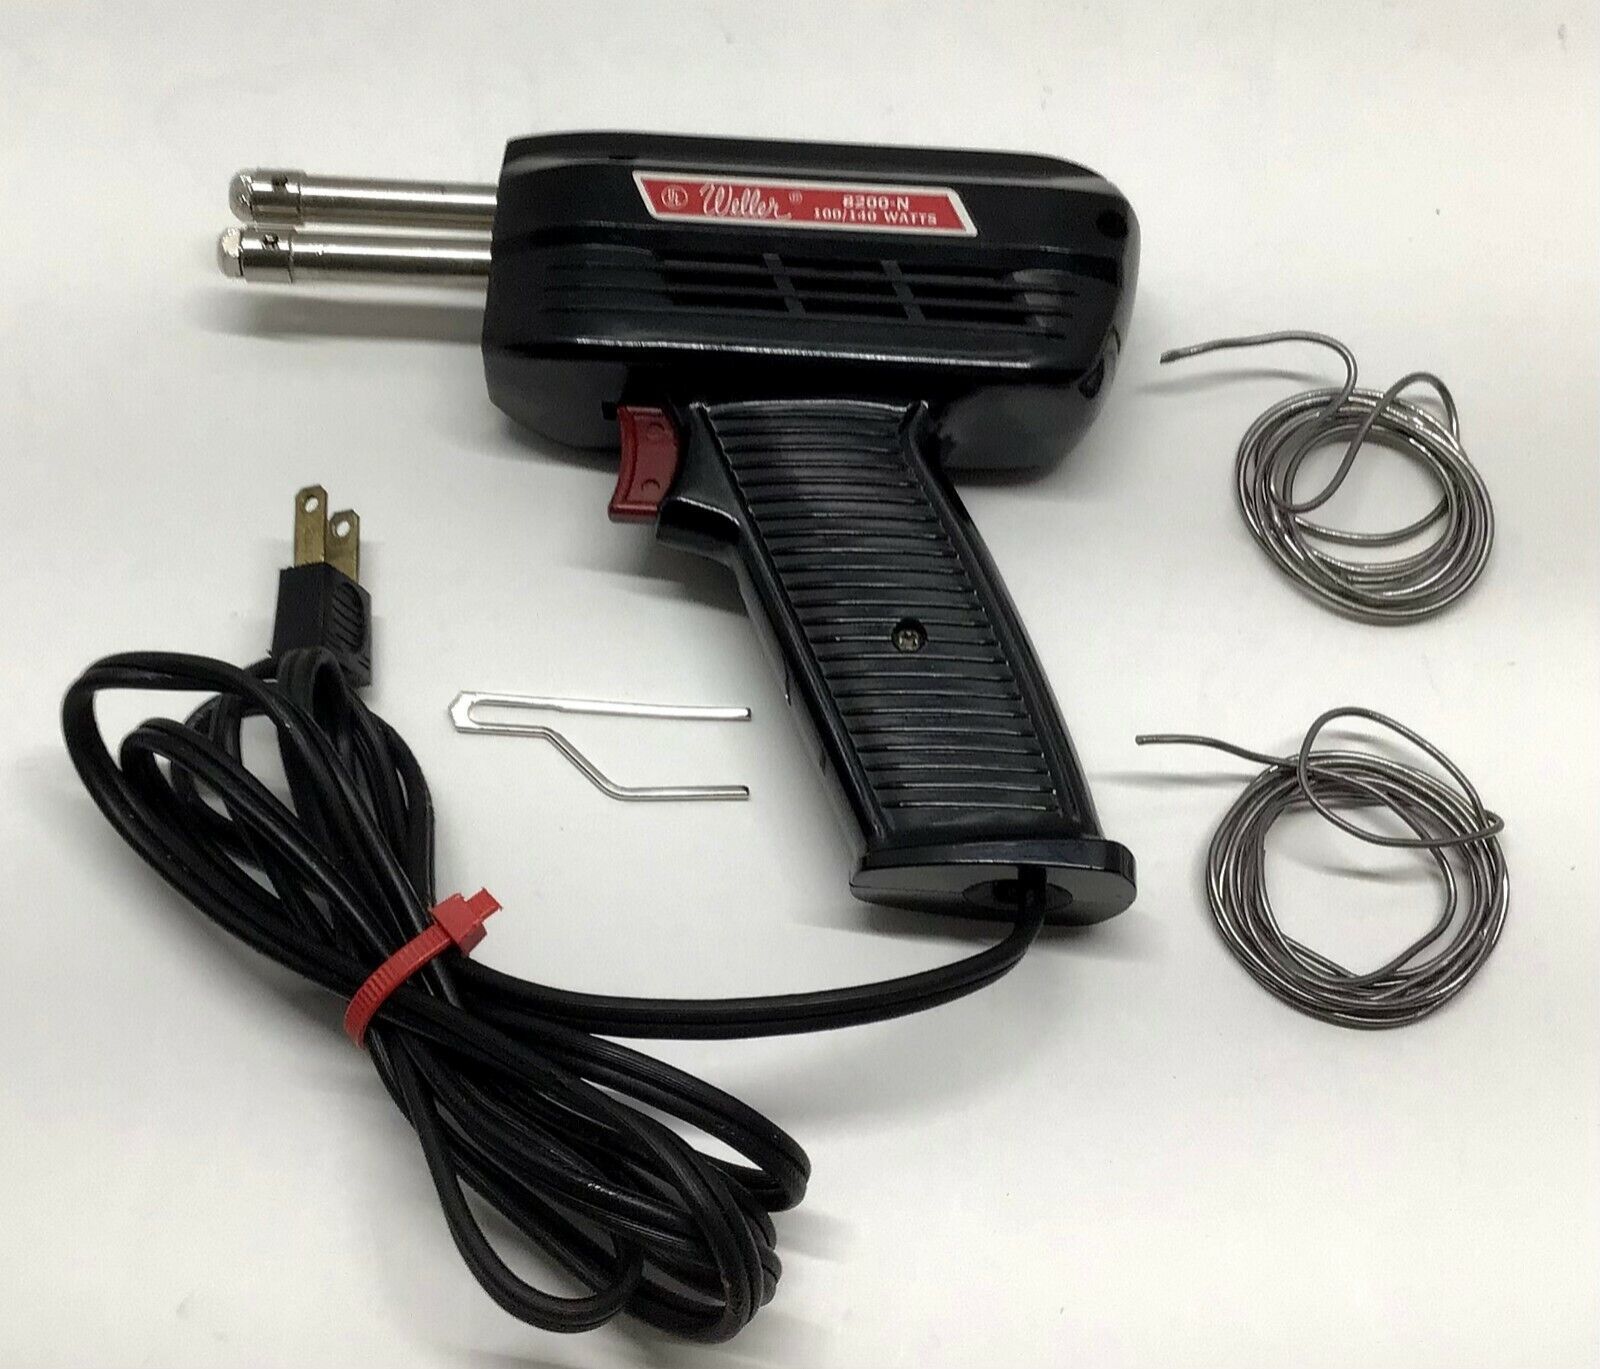 Weller Apex Soldering Gun Model 8200N 120v 100-140 watt with light WORKS Tested - $33.61